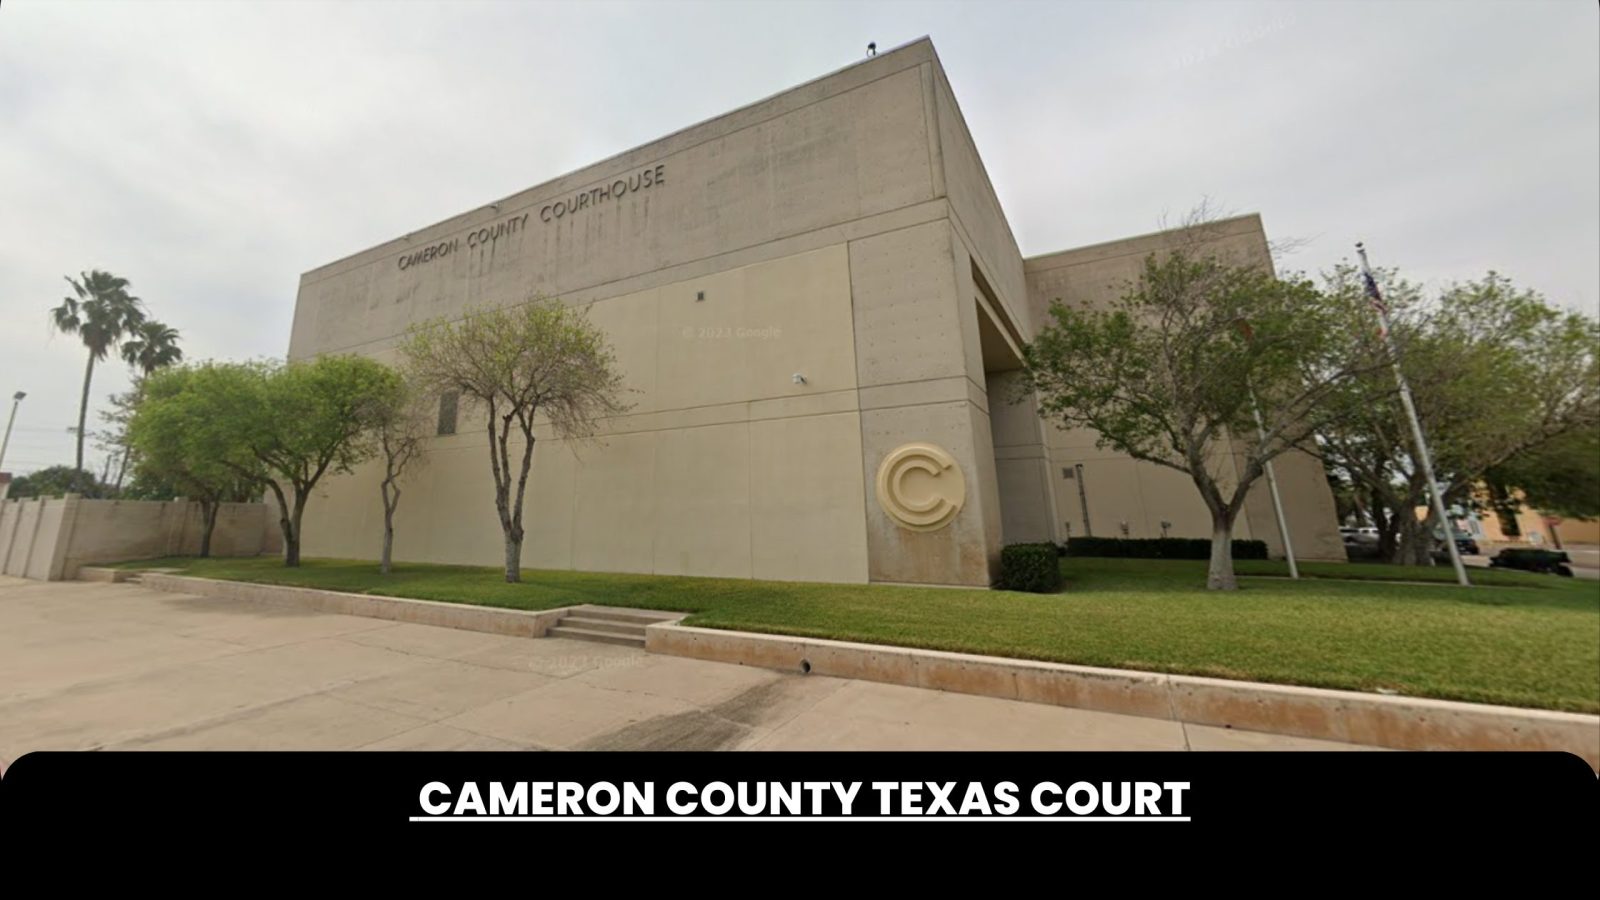 Cameron County Texas Court